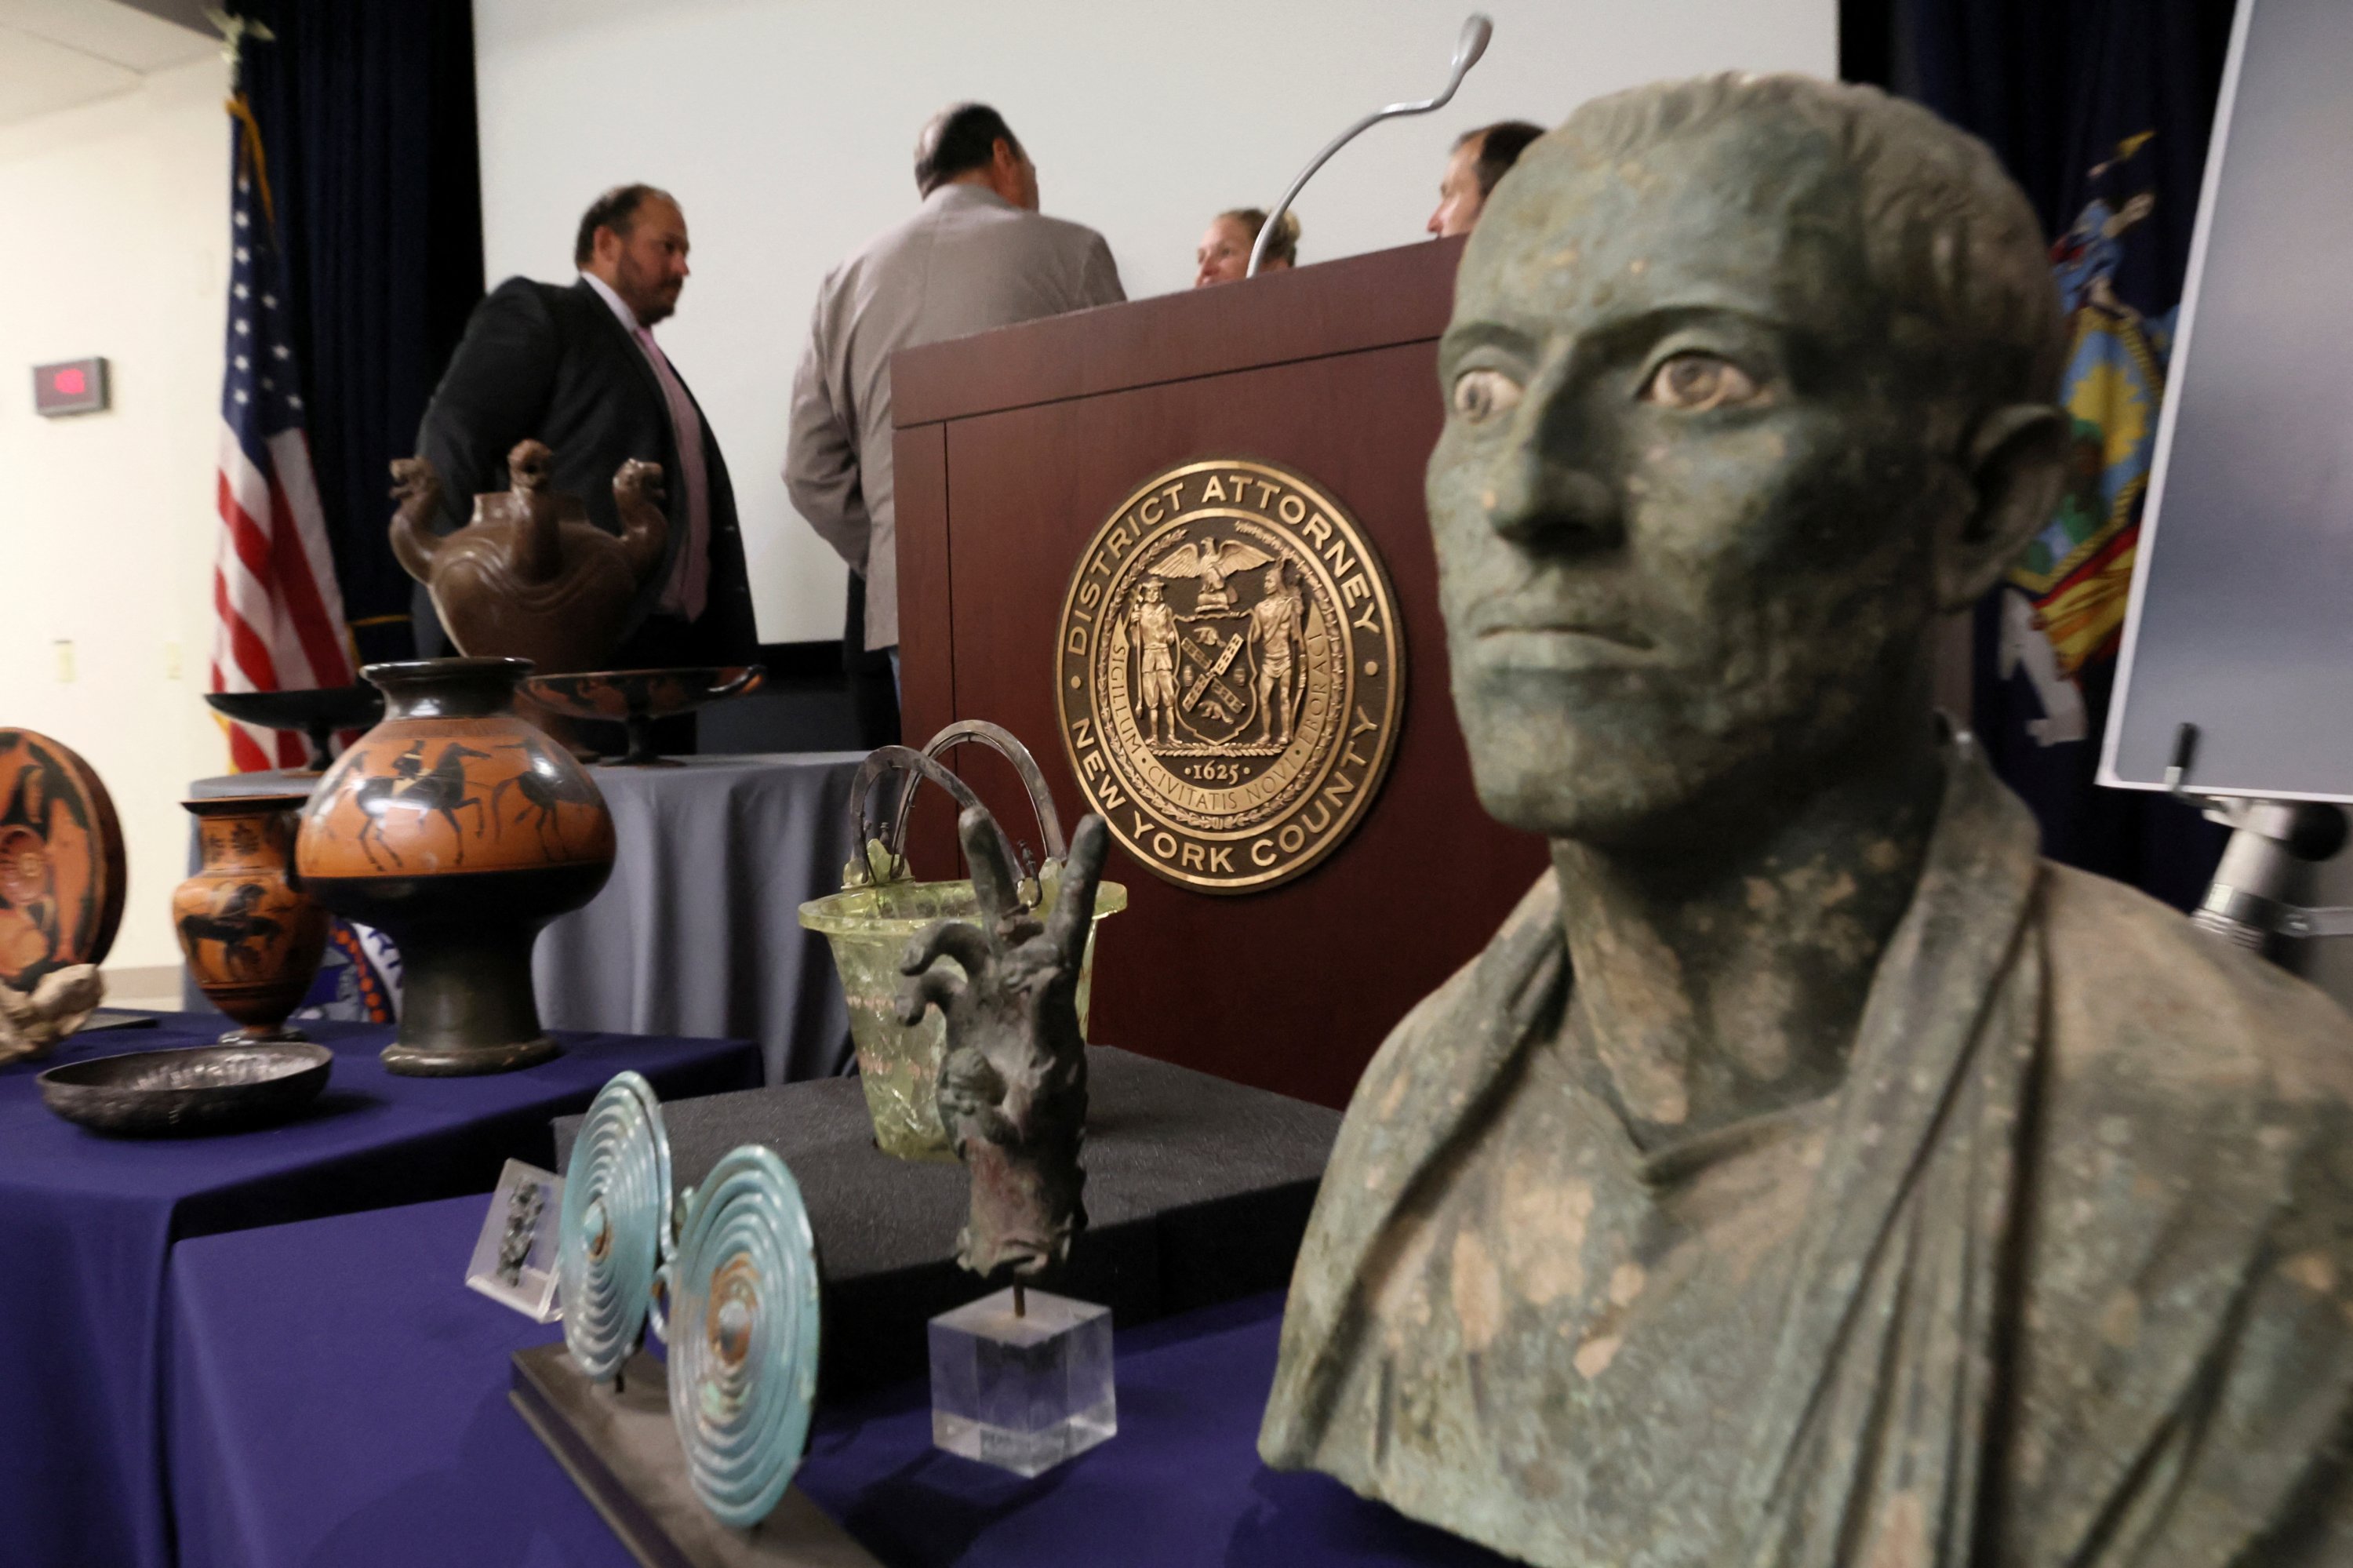 Patung Patung Perunggu Manusia dan artefak penting lainnya ditampilkan selama konferensi pers dan upacara pemulangan barang antik curian ke Italia, di New York City, AS, 6 September 2022. (REUTERS)